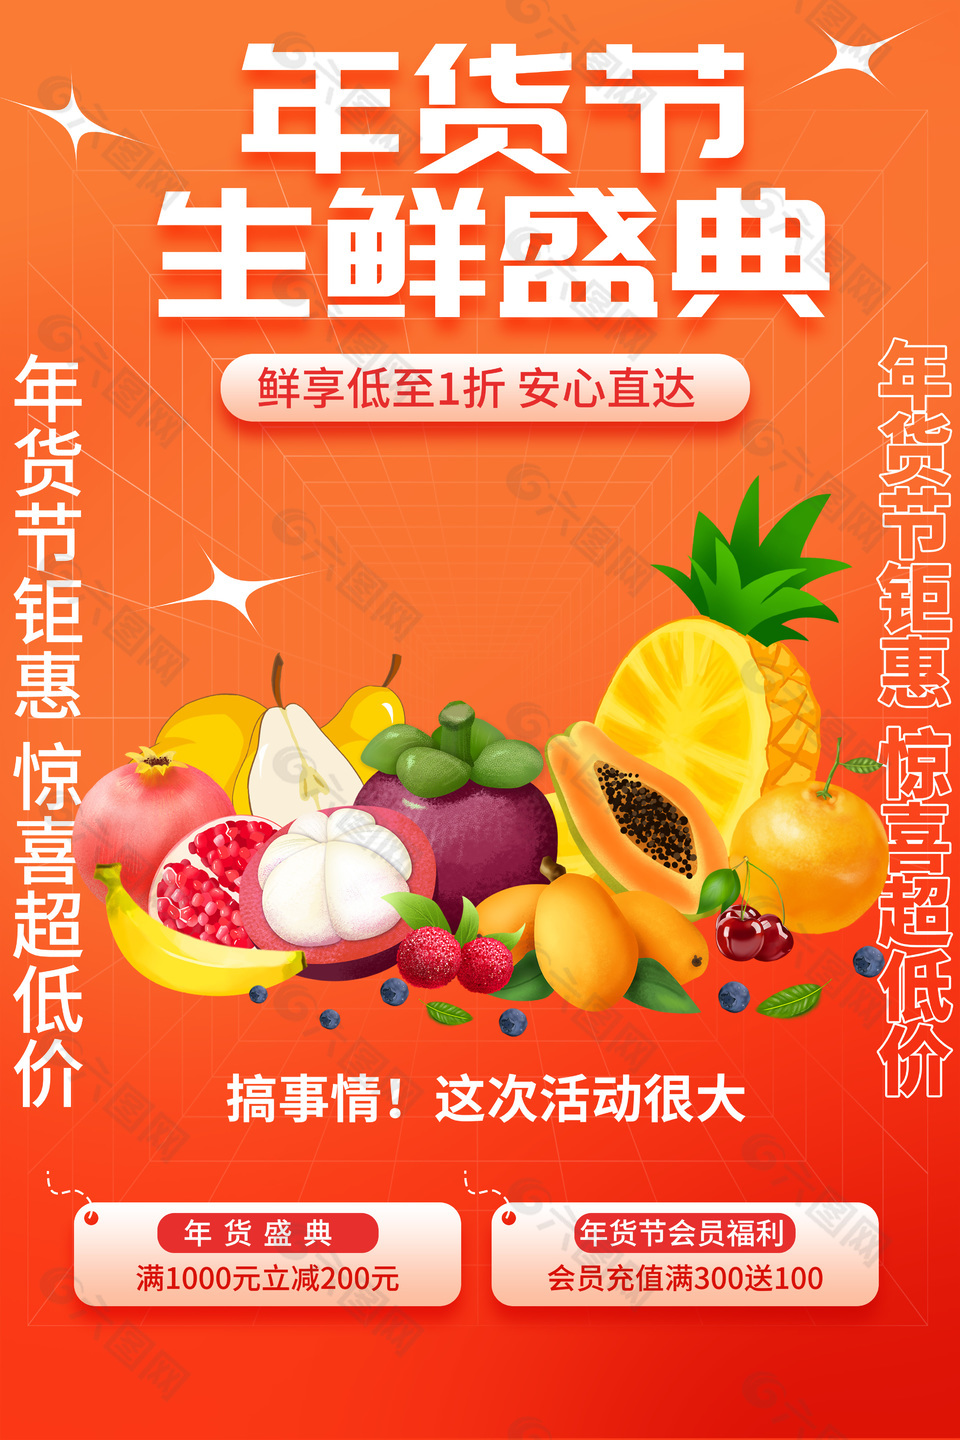 年货节生鲜盛典橙色主题创意海报设计